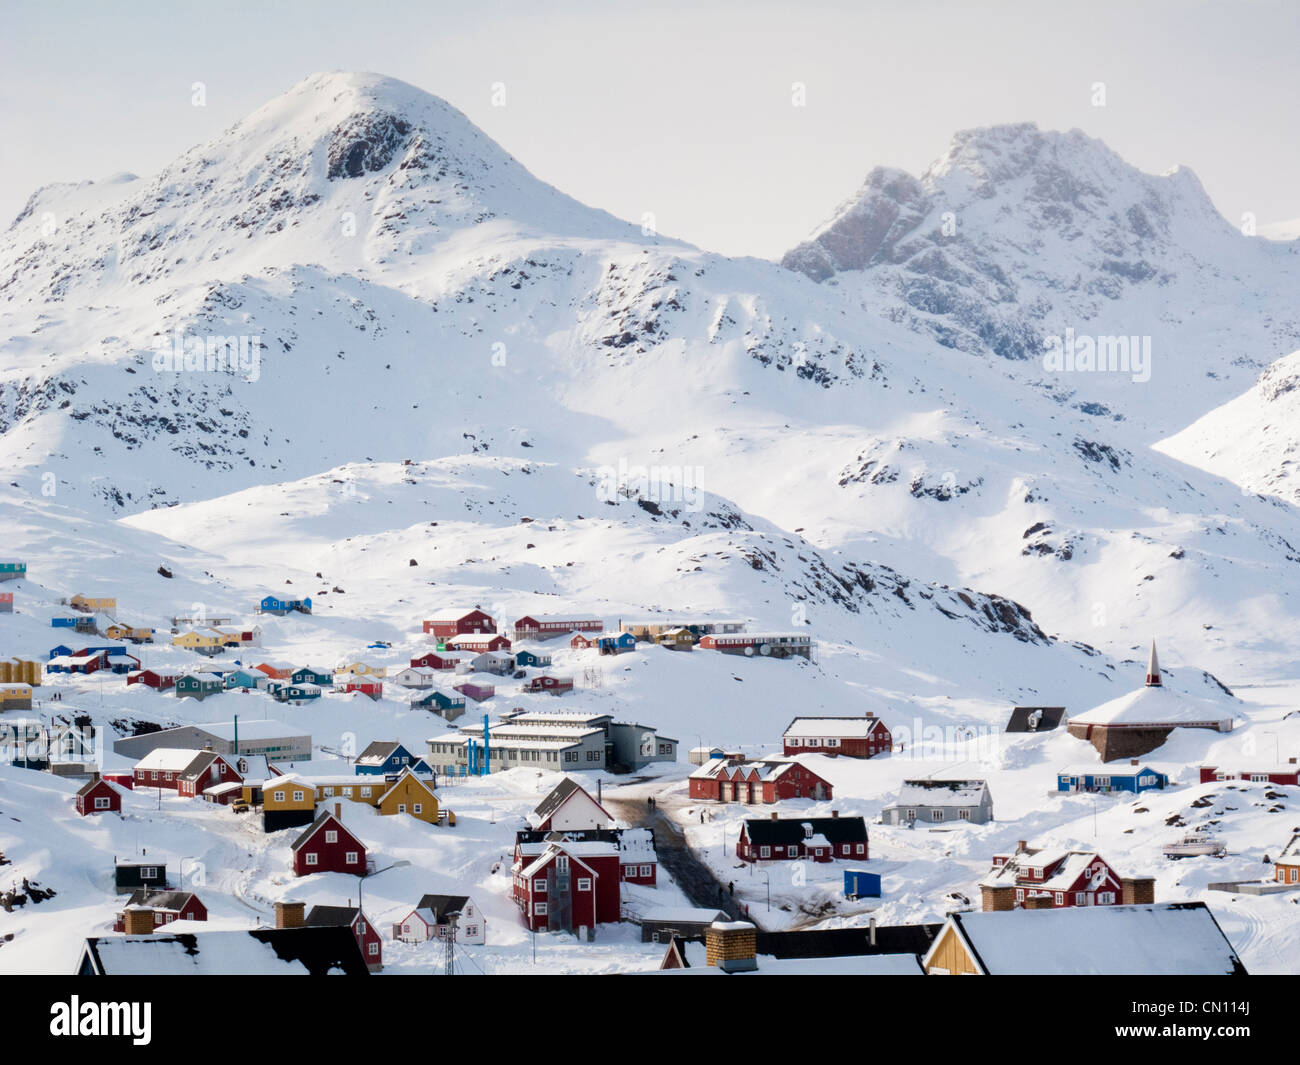 Paysage village Inuit de l'Arctique, Groenland - Tasiilaq Banque D'Images